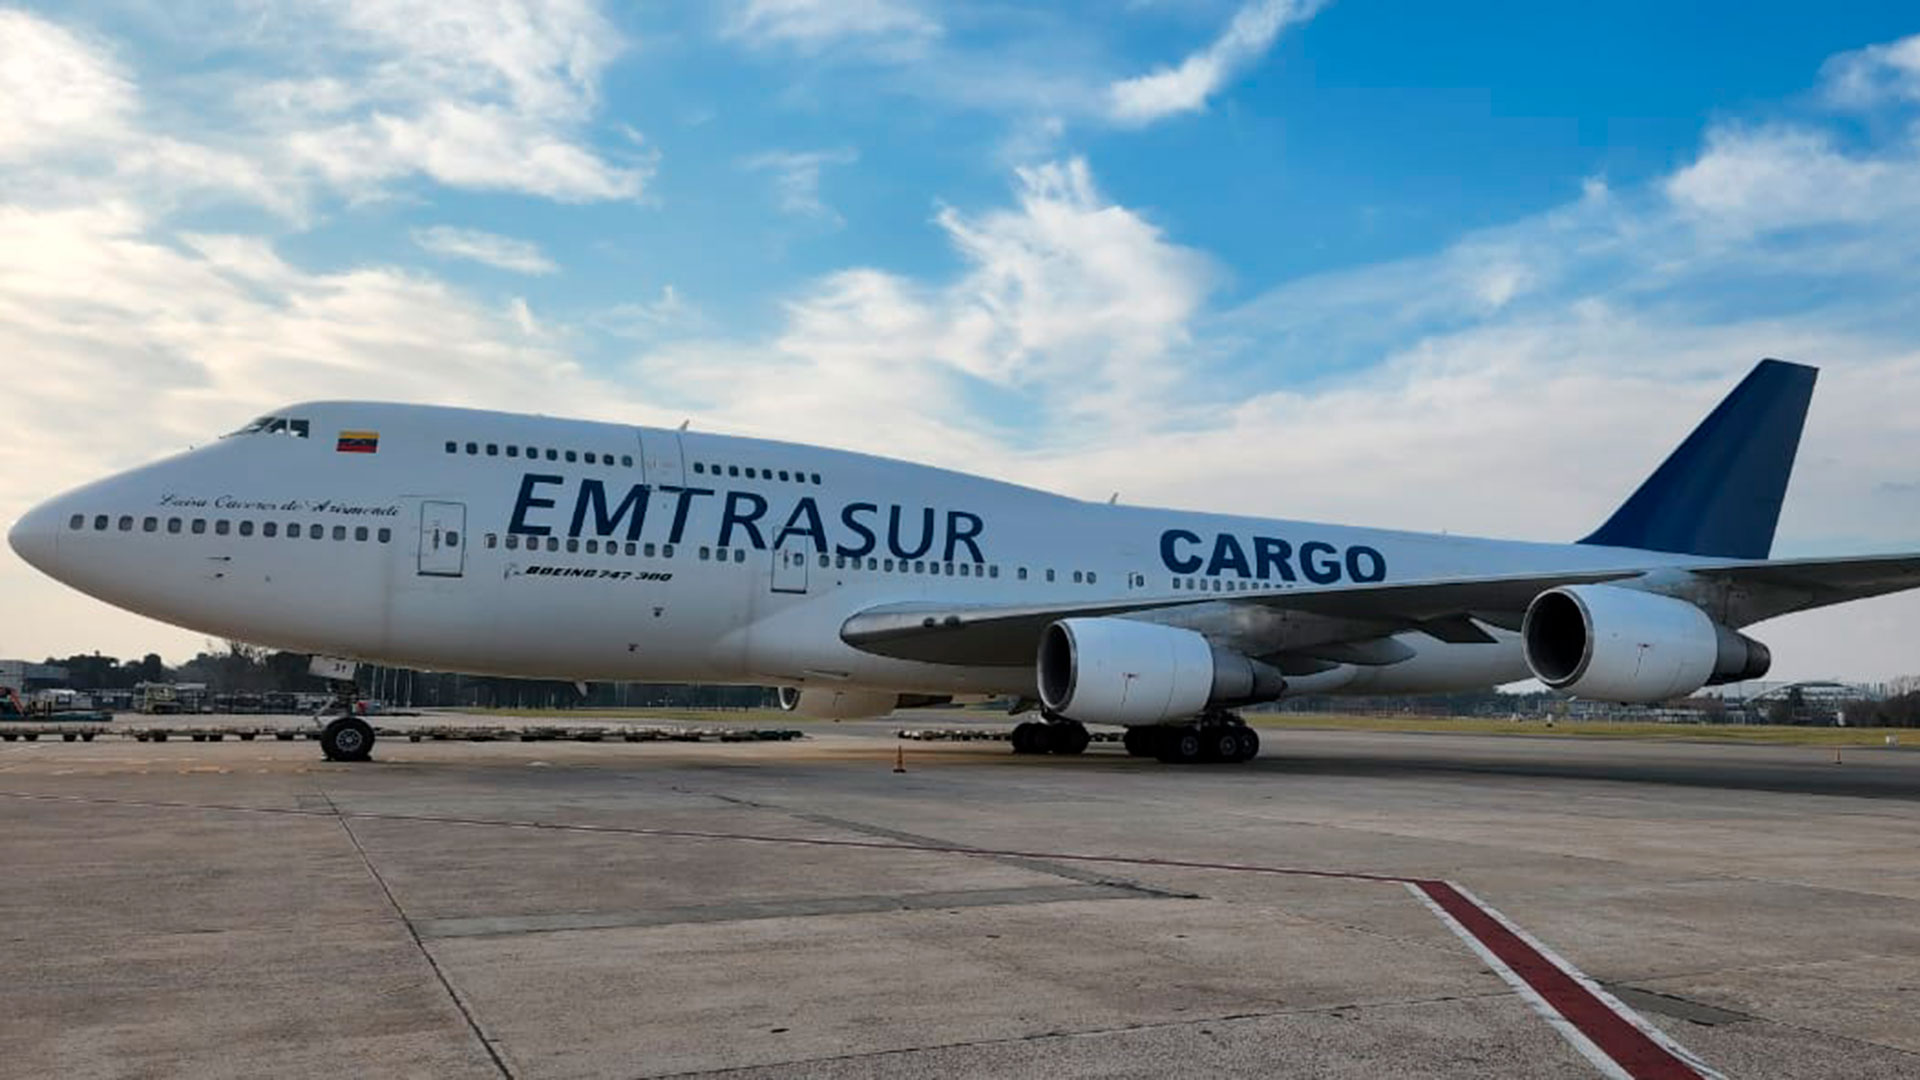 El avión Boeing 747 Dreamliner de carga, fue propiedad de la empresa iraní Mahan Air y actualmente pertenece a Emtrasur